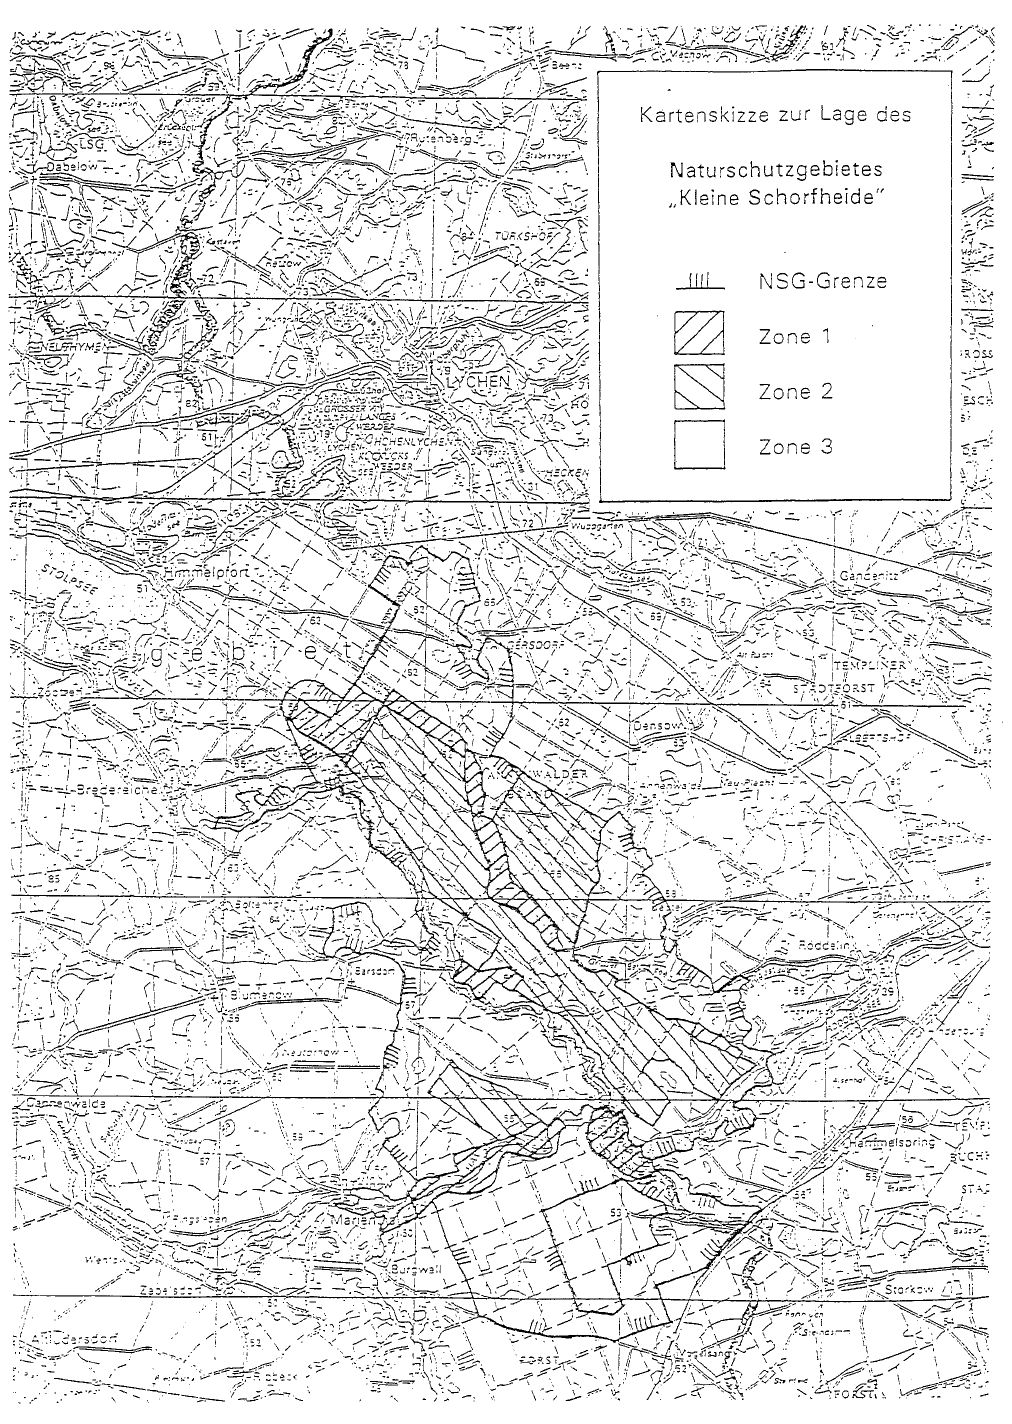 Kartenskizze zur Lage des Naturschutzgebietes "Kleine Schorfheide"